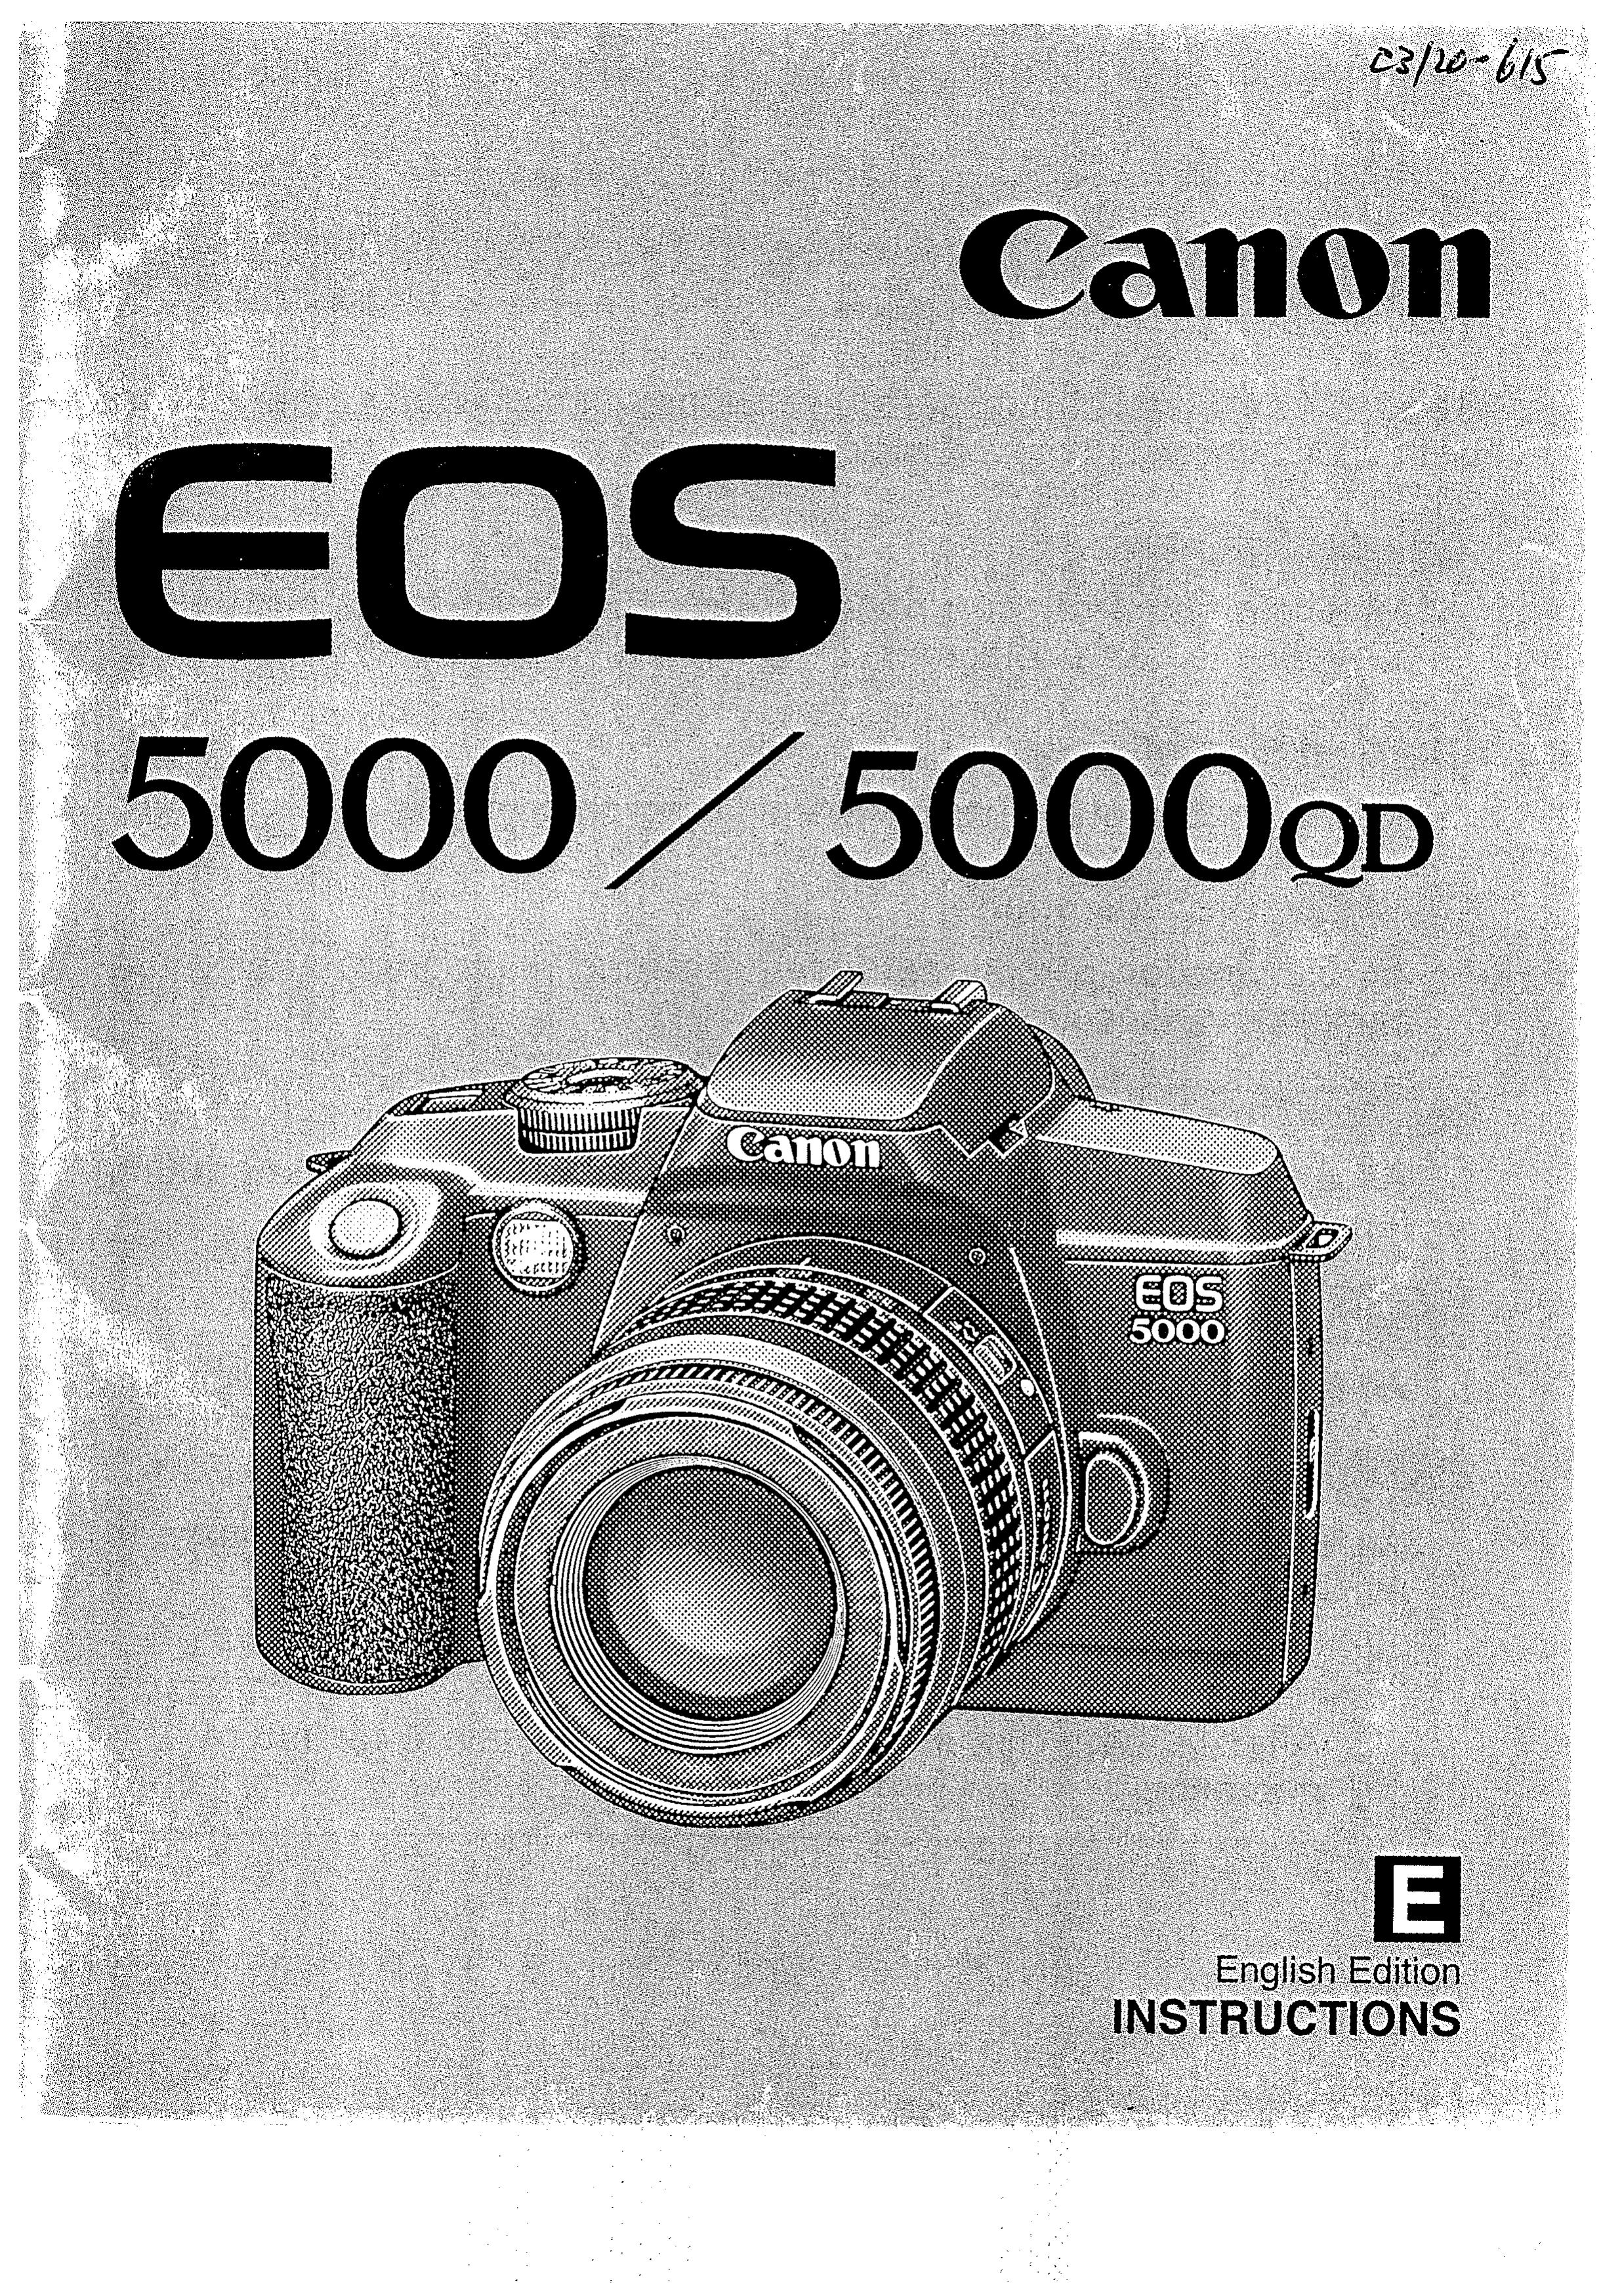 Canon 5000QD Film Camera User Manual